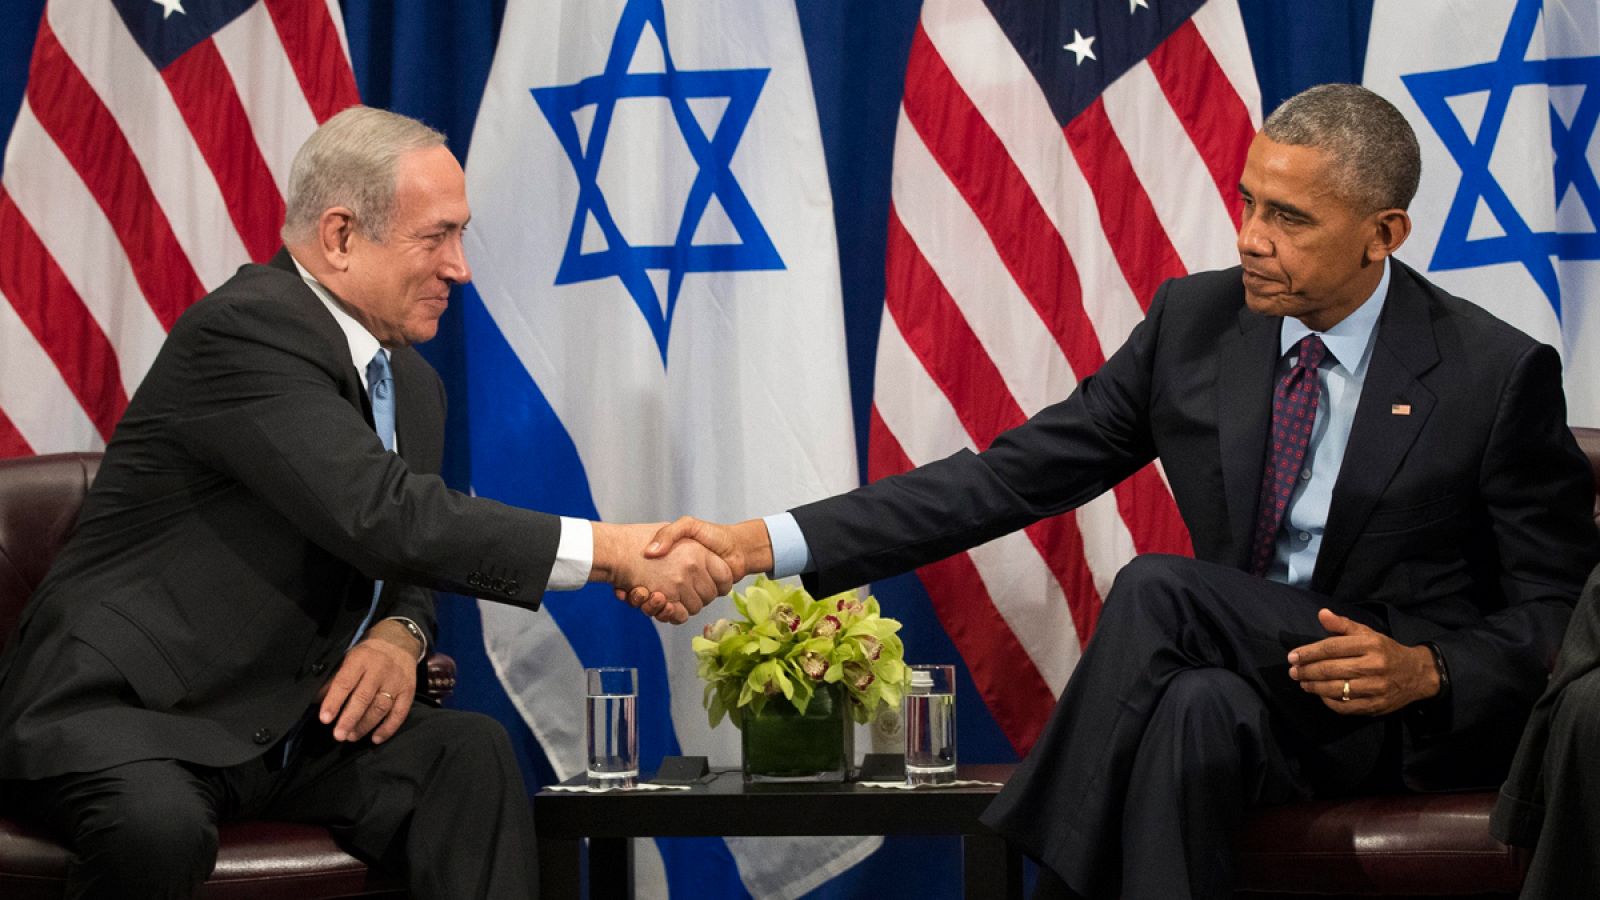 El primer ministro israelí, Benjamín Netanyahu, estrecha la mano del presidente estadounidense, Barack Obama, durante su reunión en el Lotte New York Palace Hotel de Nueva York.